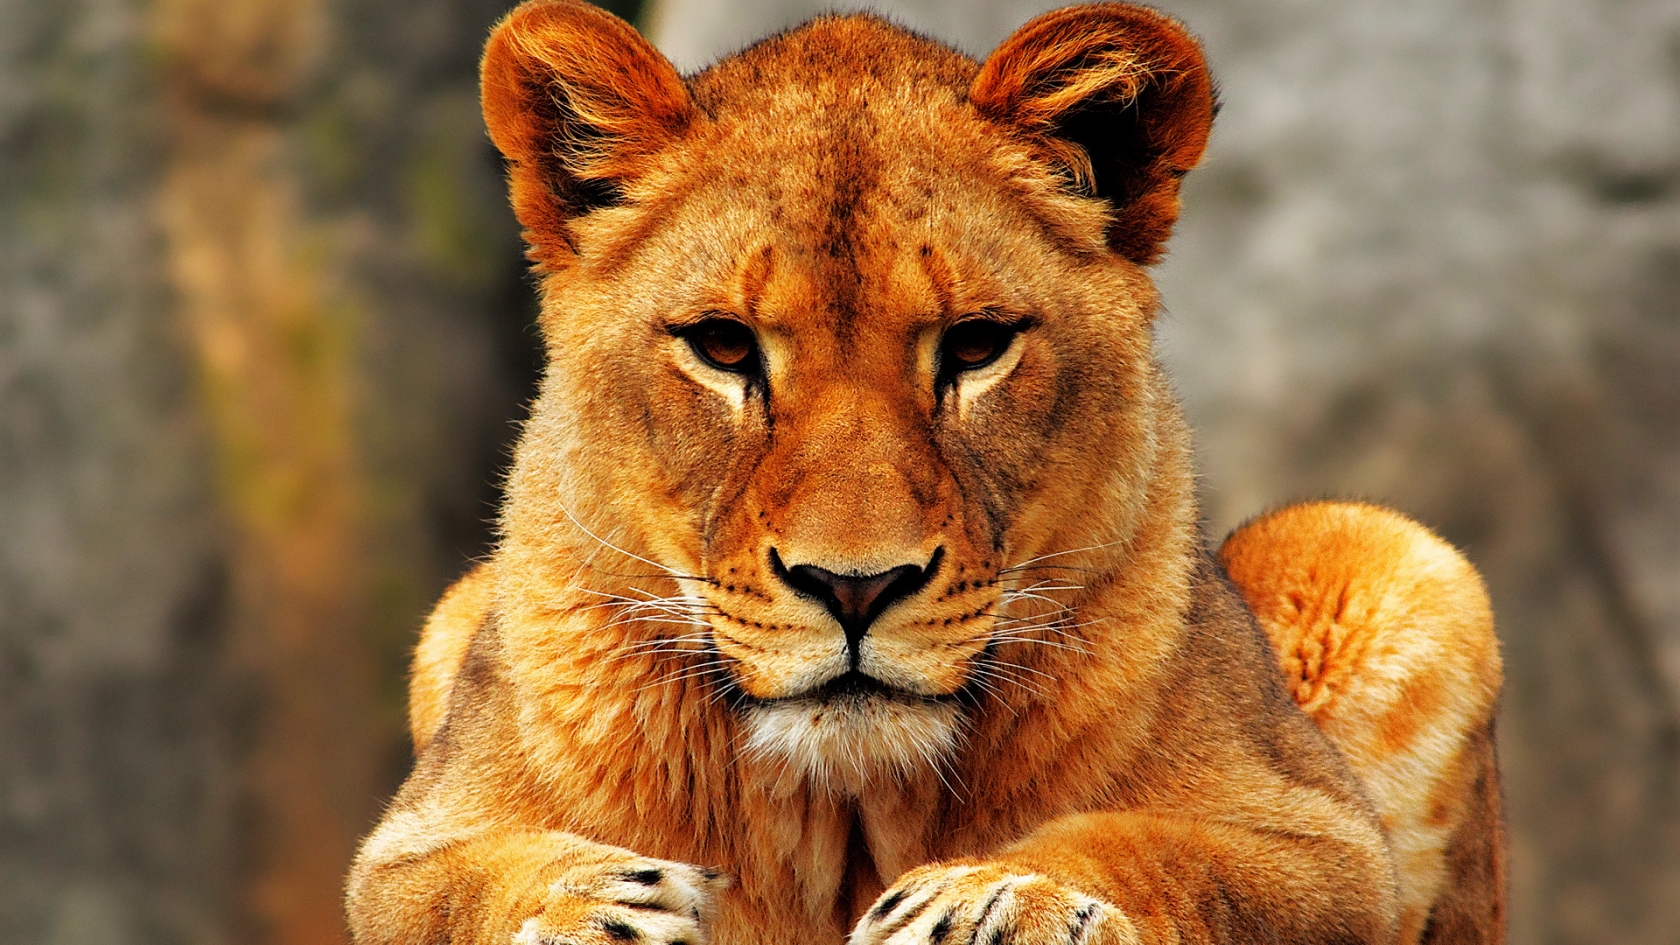 Lion Female for 1680 x 945 HDTV resolution